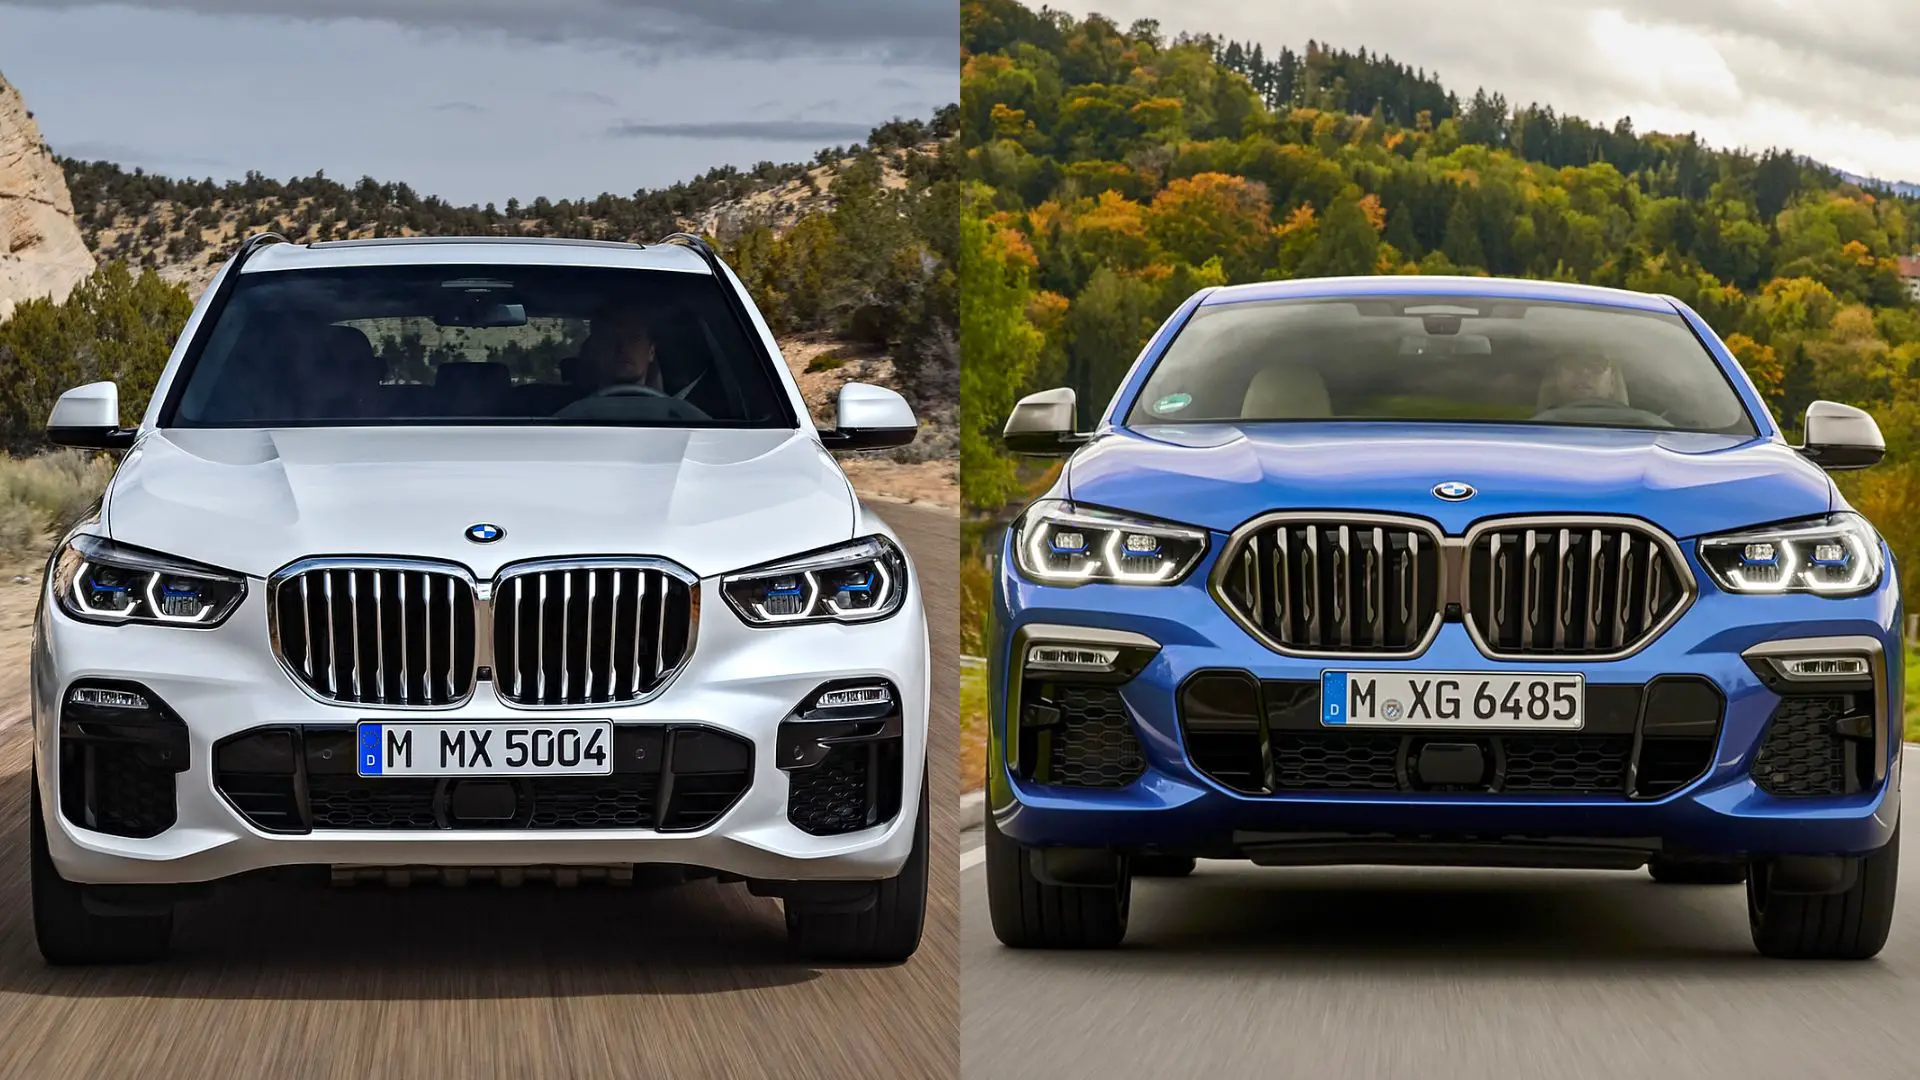 BMW X5 vs X6 comparison